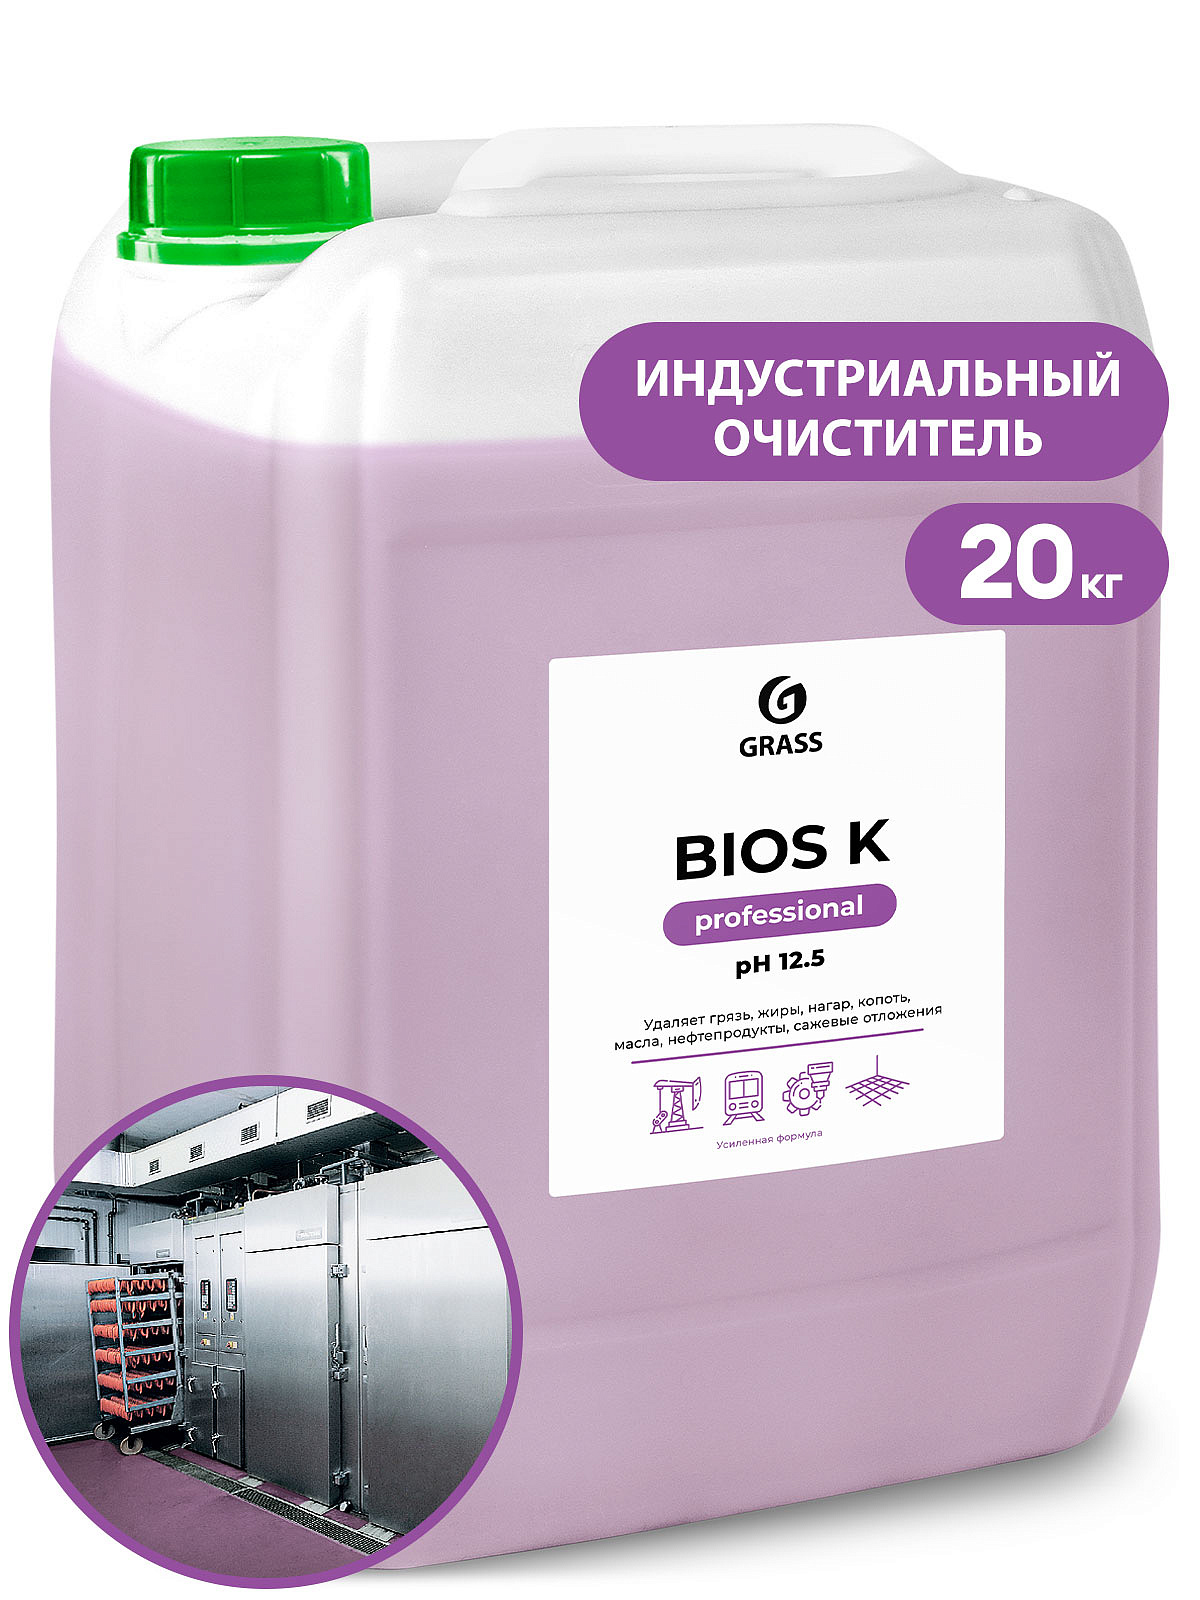 Высококонцентрированное щелочное средство "Bios K" (канистра 22,5 кг)